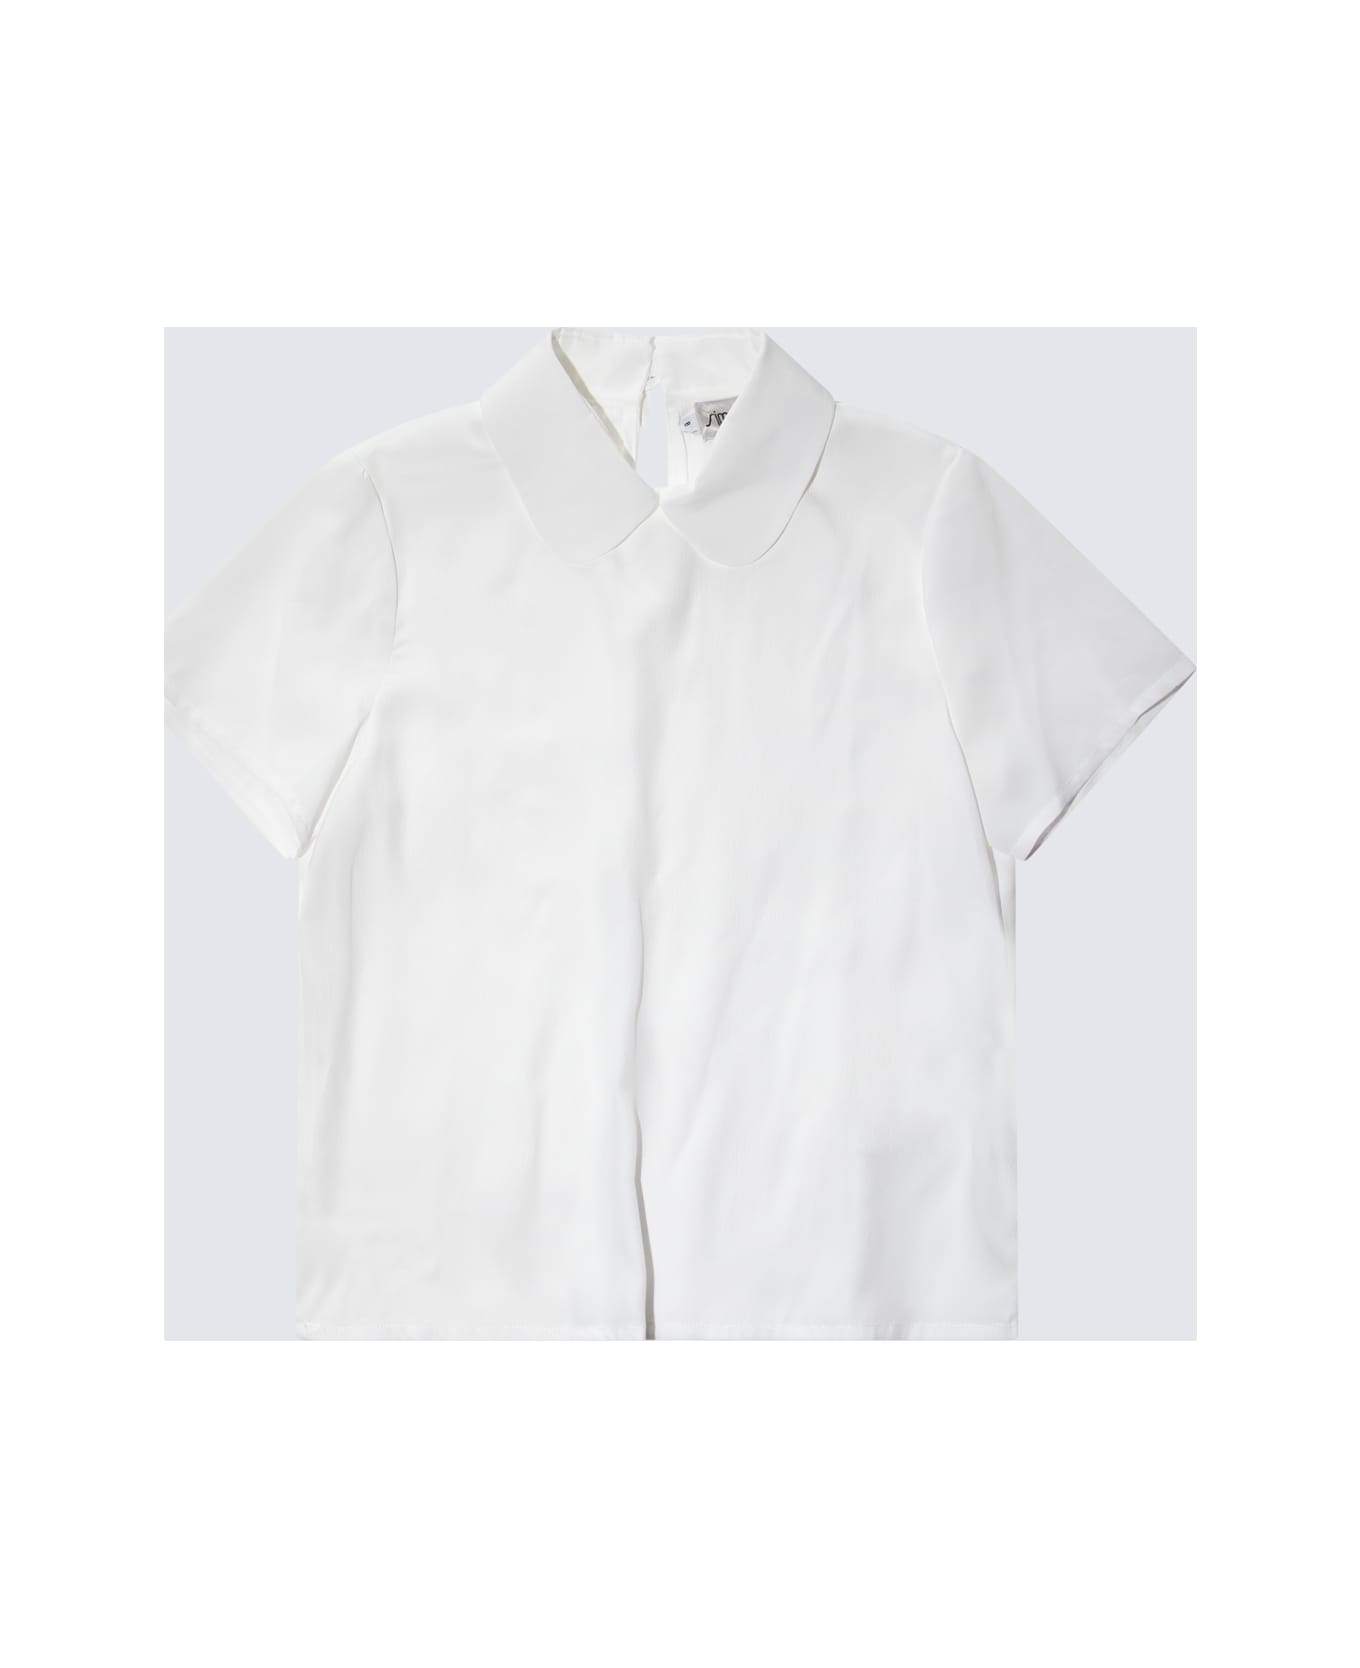 Simonetta White Shirt - White シャツ